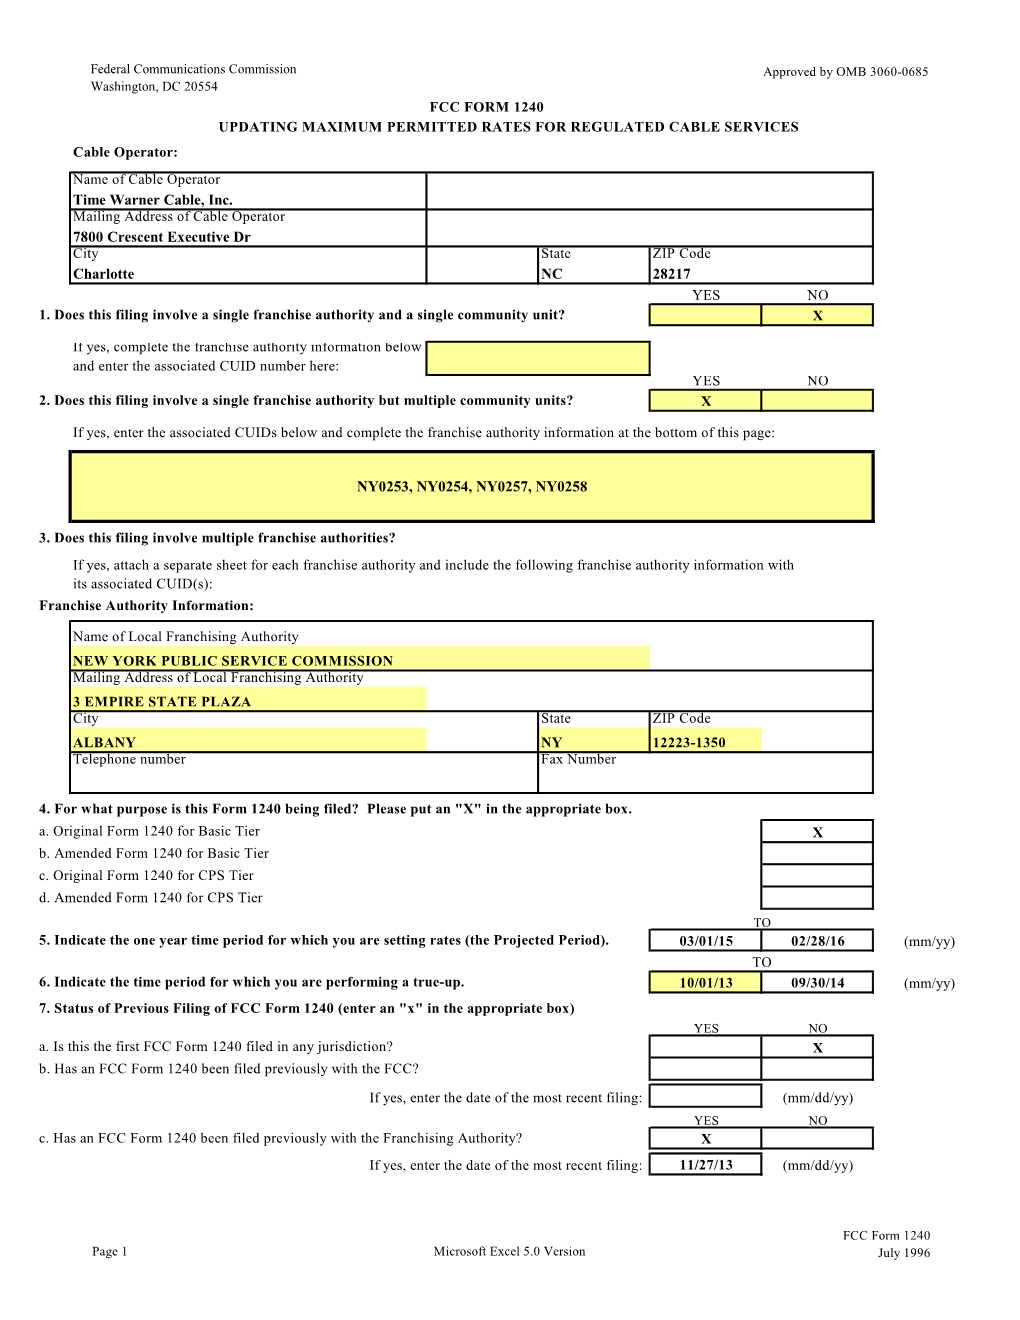 FCC Form 1240 for Excel 5.0, 1St Version